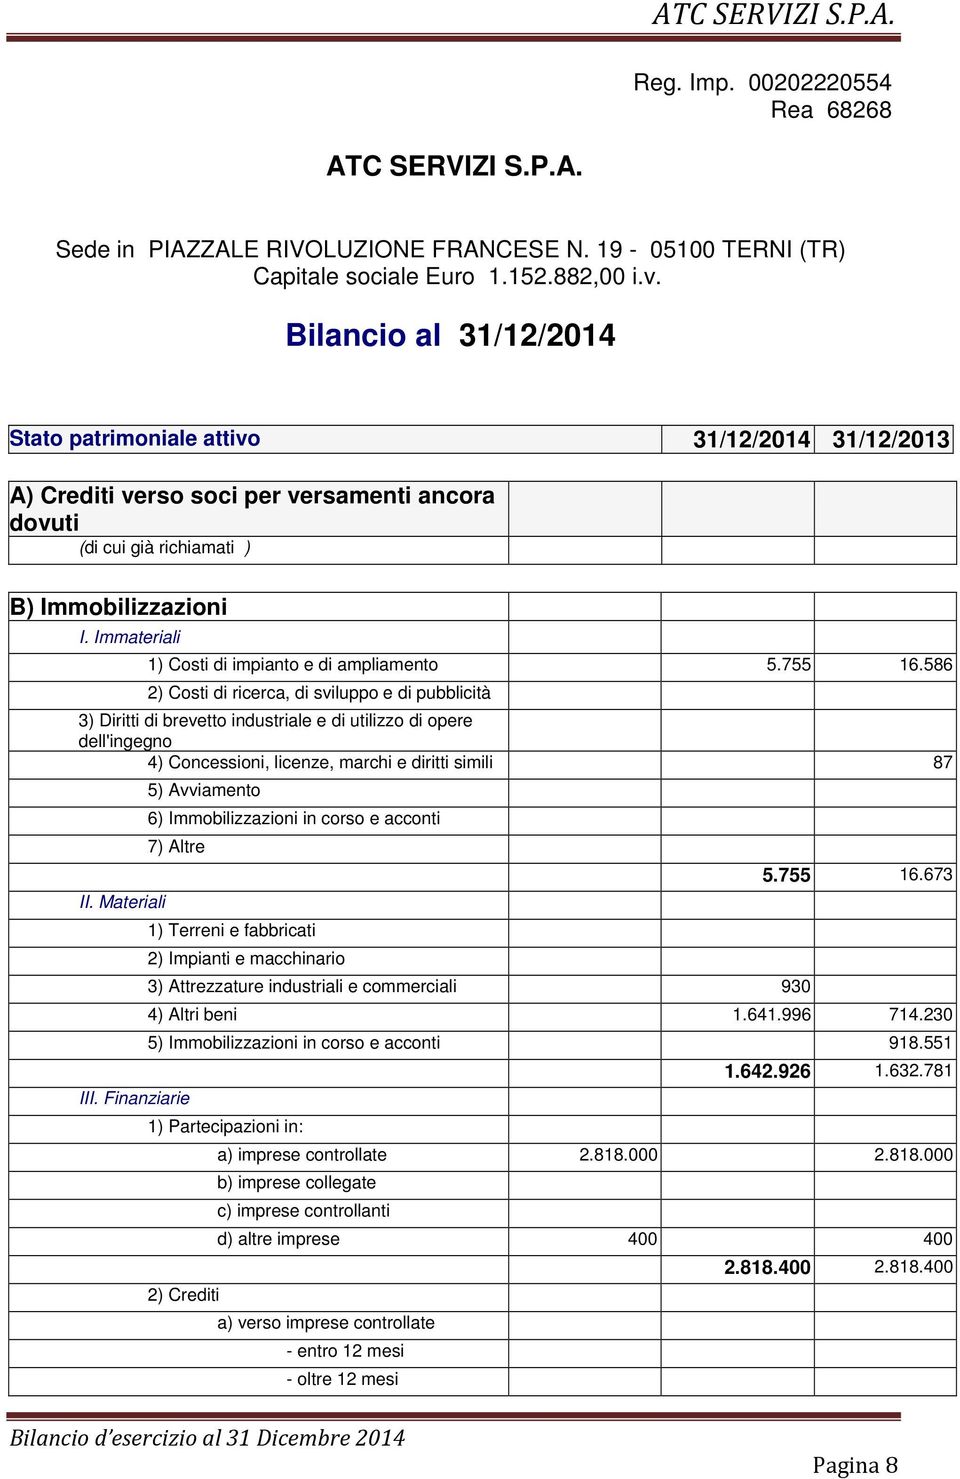 Immateriali 1) Costi di impianto e di ampliamento 5.755 16.